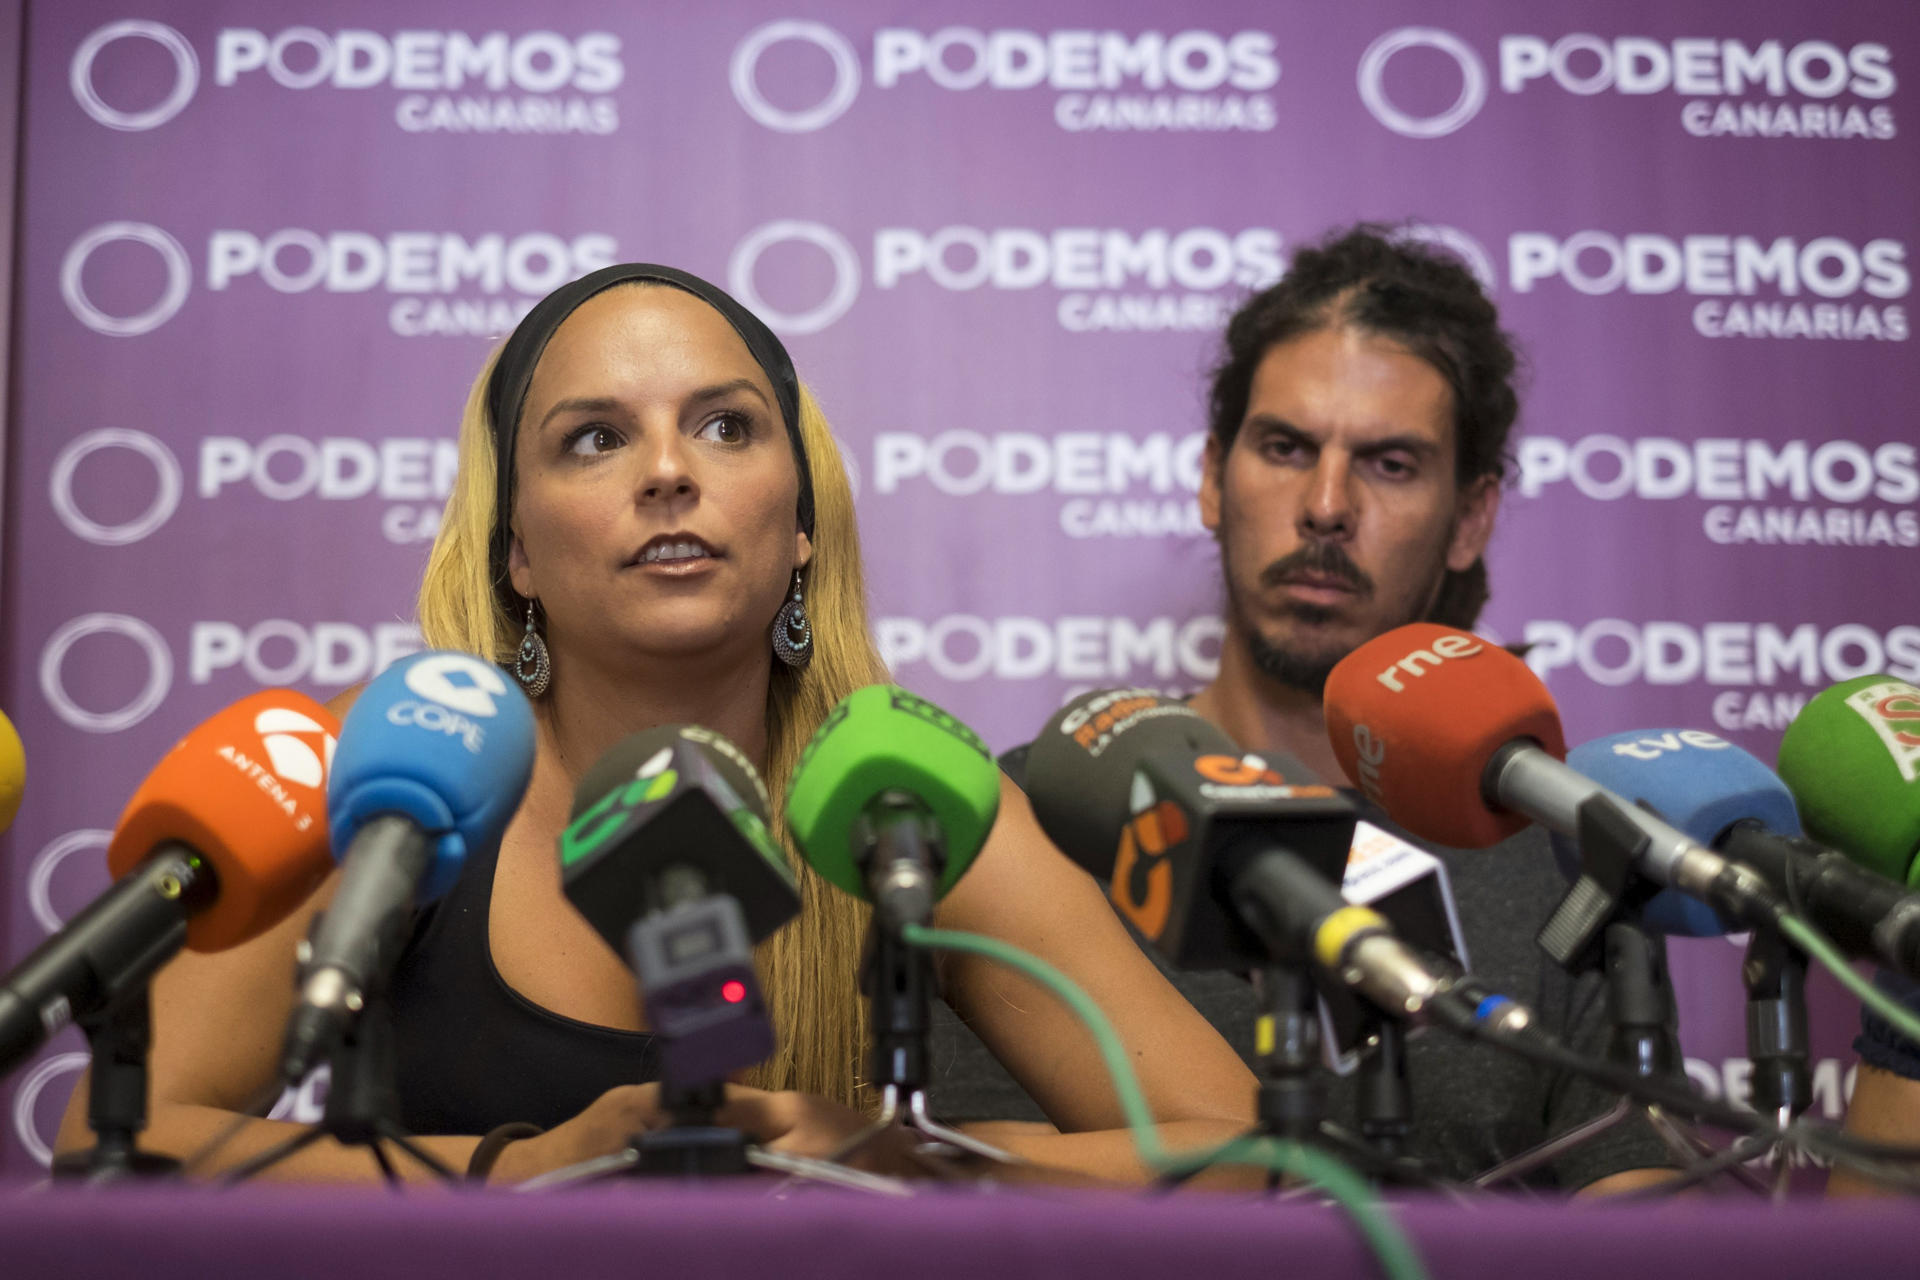 Foto de archivo de Noemí Santana, candidata de Podemos a presidenta de Canarias, y Alberto Rodríguez en un acto del partido en el que ambos militaban entonces. EFE/Ángel Medina G.